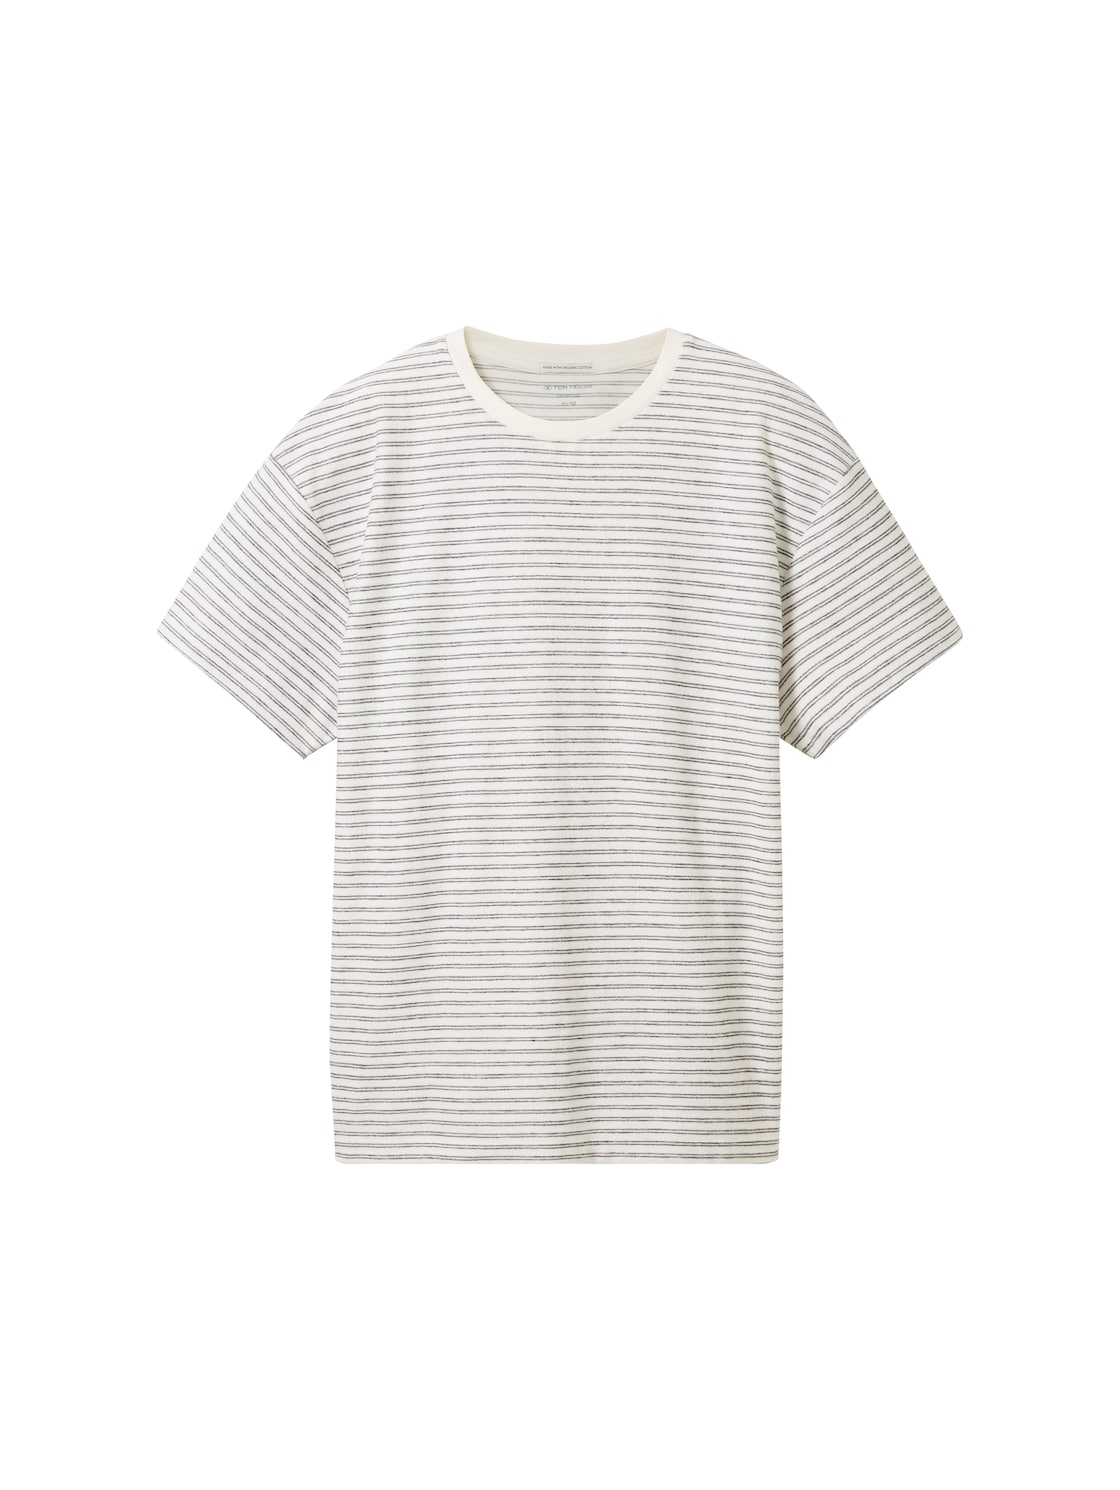 TOM TAILOR Jungen Gestreiftes Oversized T-Shirt, weiß, Streifenmuster, Gr. 140 von Tom Tailor